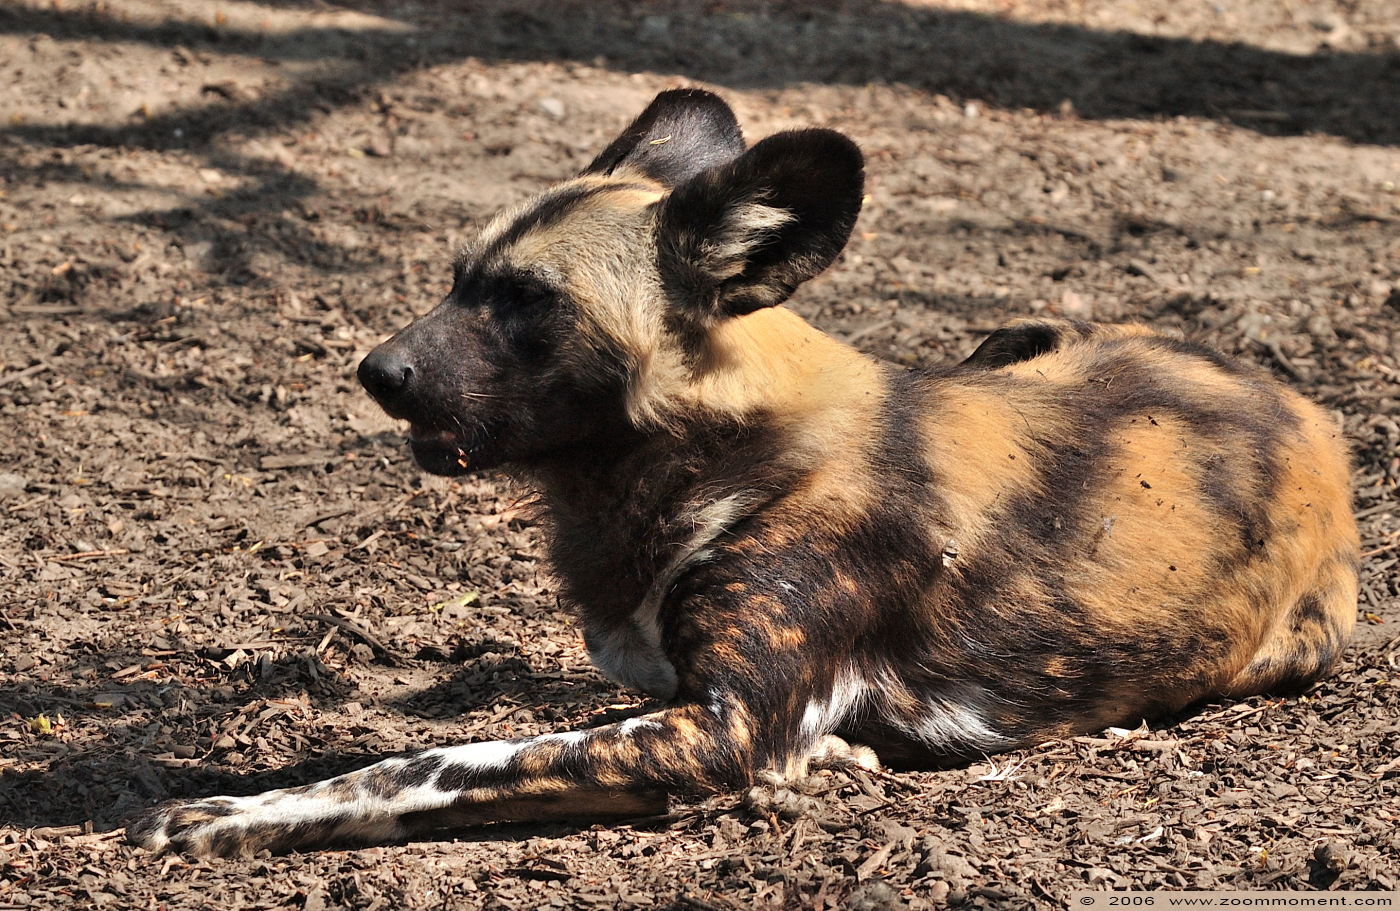 Afrikaanse wilde hond ( Lycaon pictus ) African wild dog
Trefwoorden: Berlijn Berlin zoo Germany Afrikaanse wilde hond Lycaon pictus African wild dog